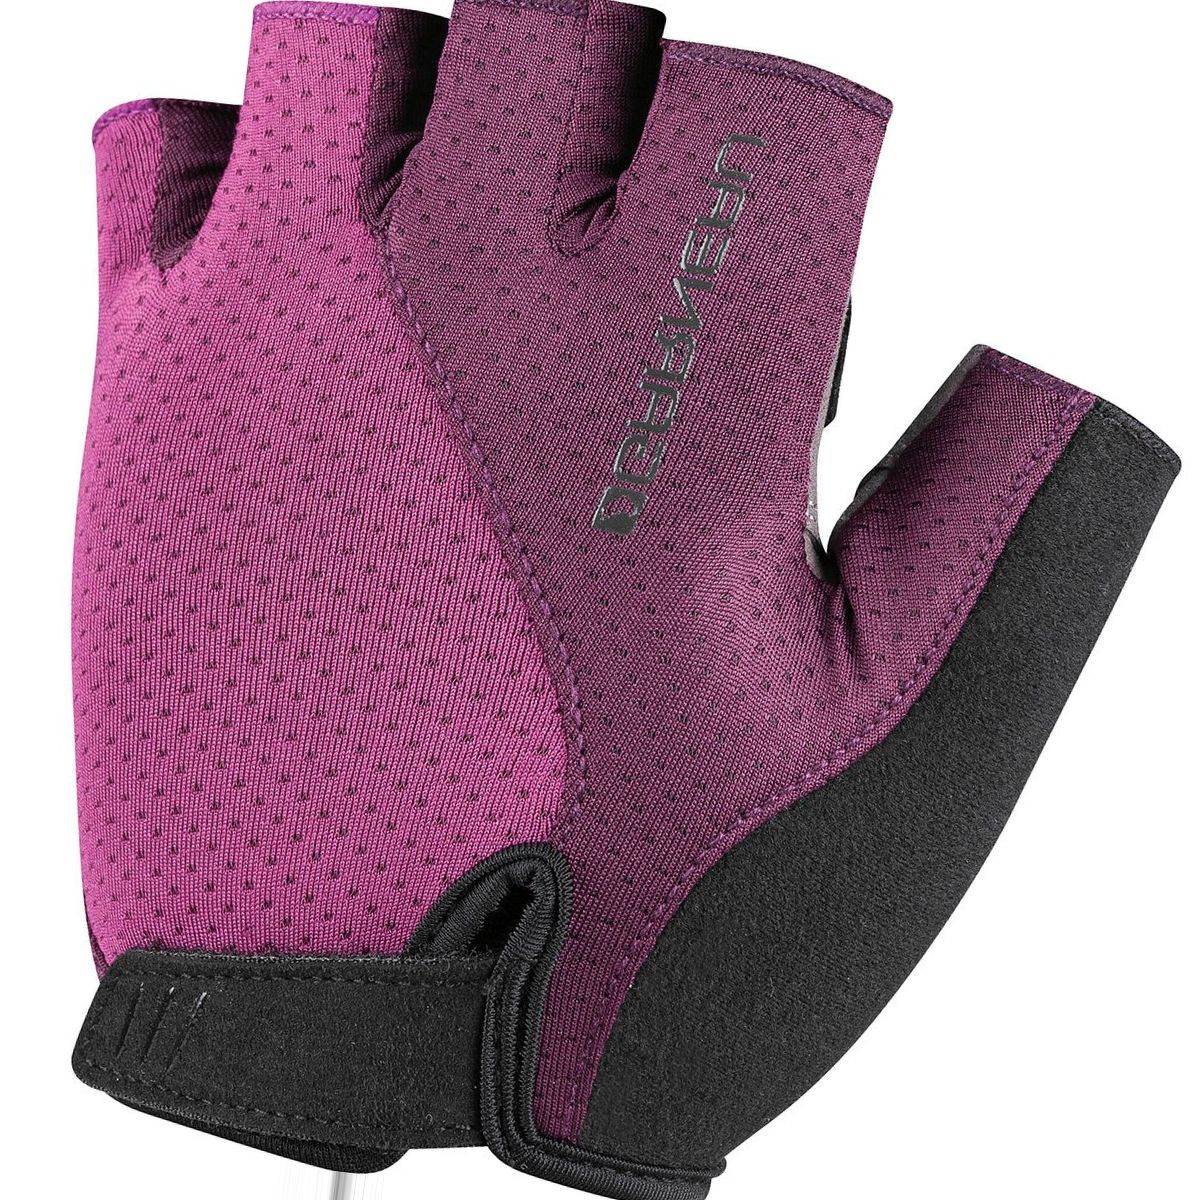 Louis Garneau Air Gel Ultra Glove - Women's